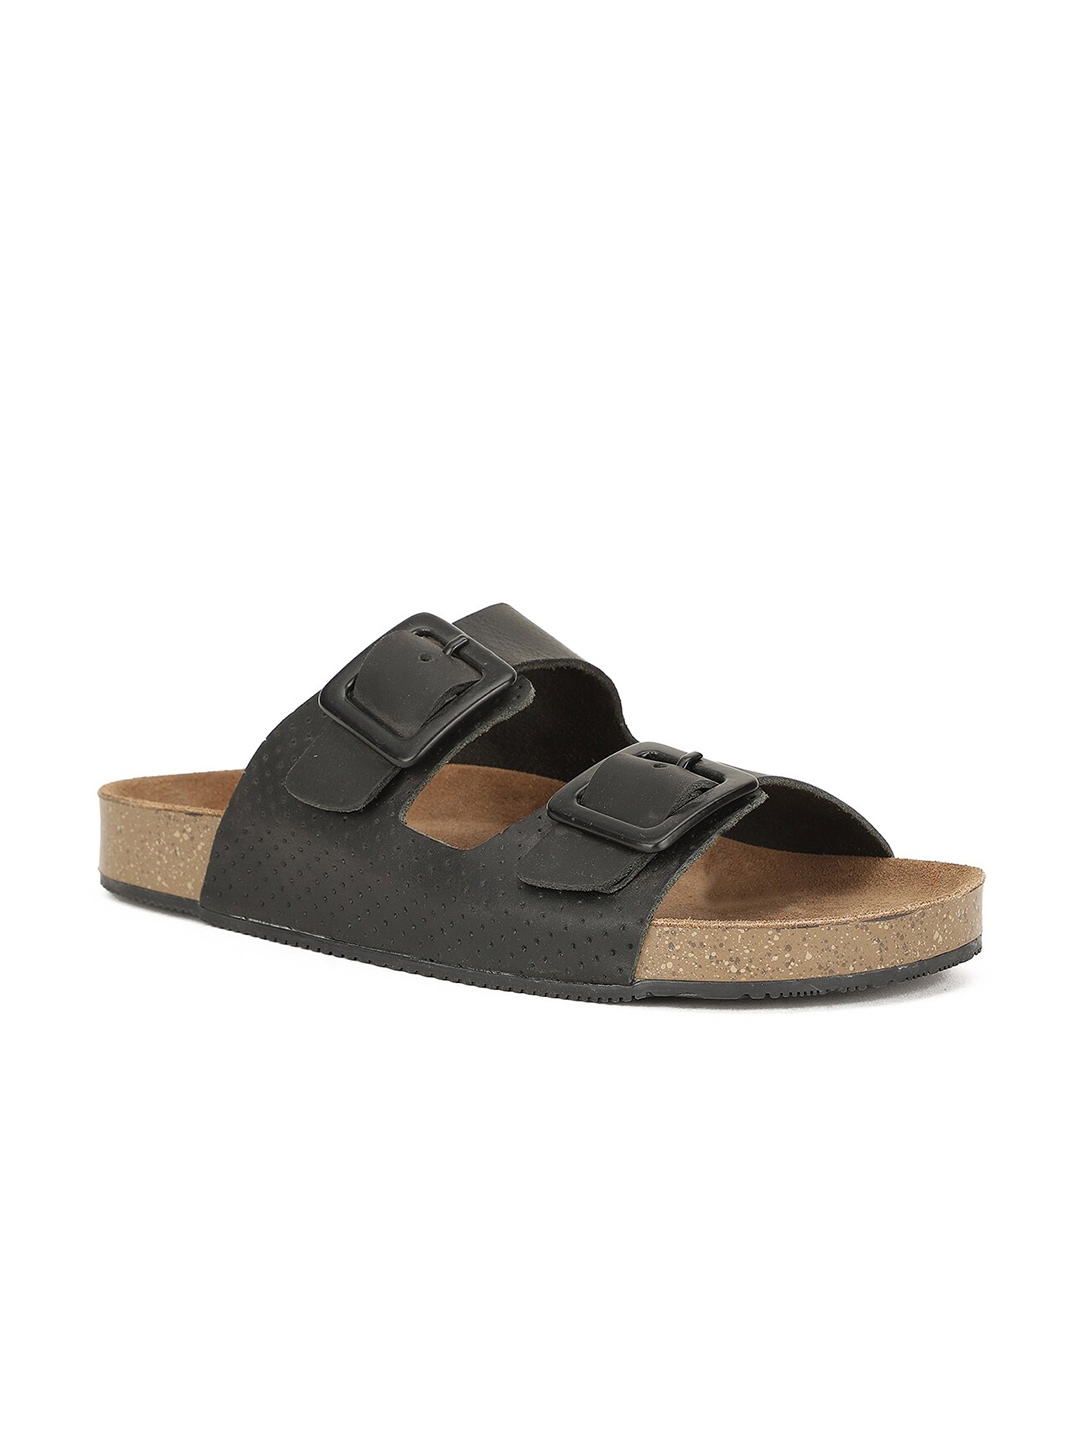 Buy Bata Men Black Leather Comfort Sandals - Sandals for Men 19334620 ...